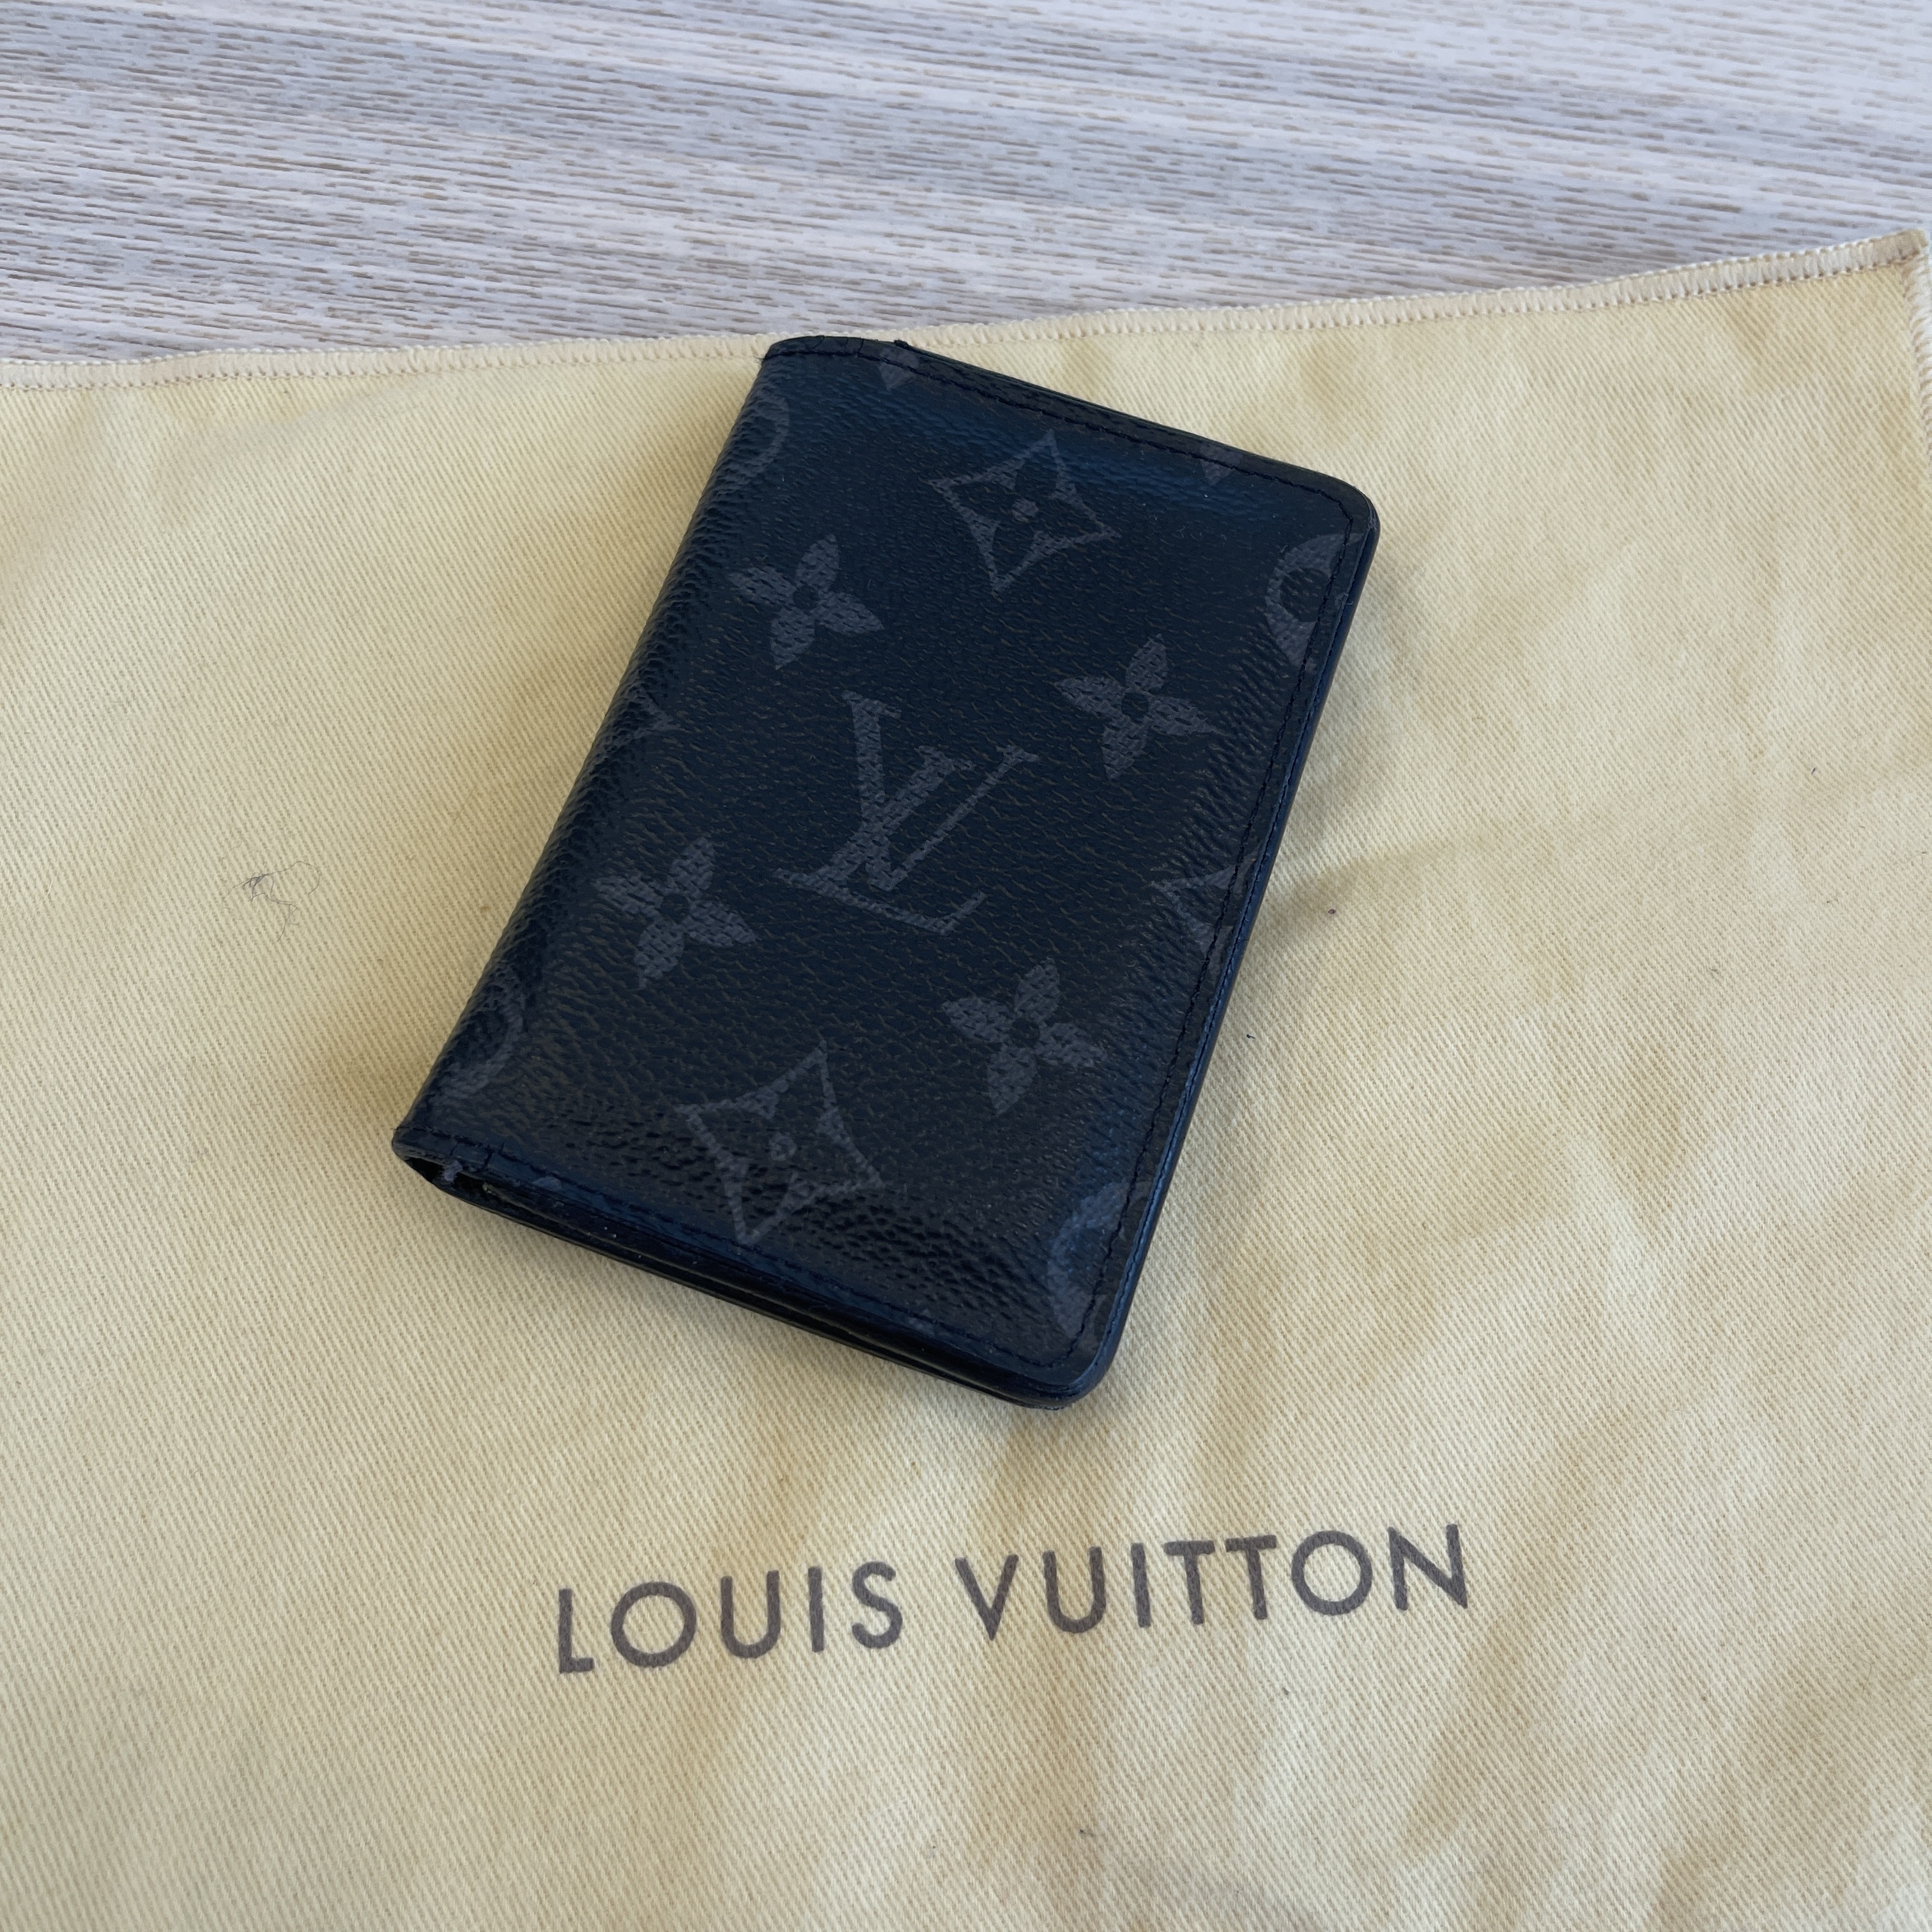 LOUIS VUITTON POCKET ORGANIZER/ CARD HOLDER IN MONOGRAM ECLIPSE